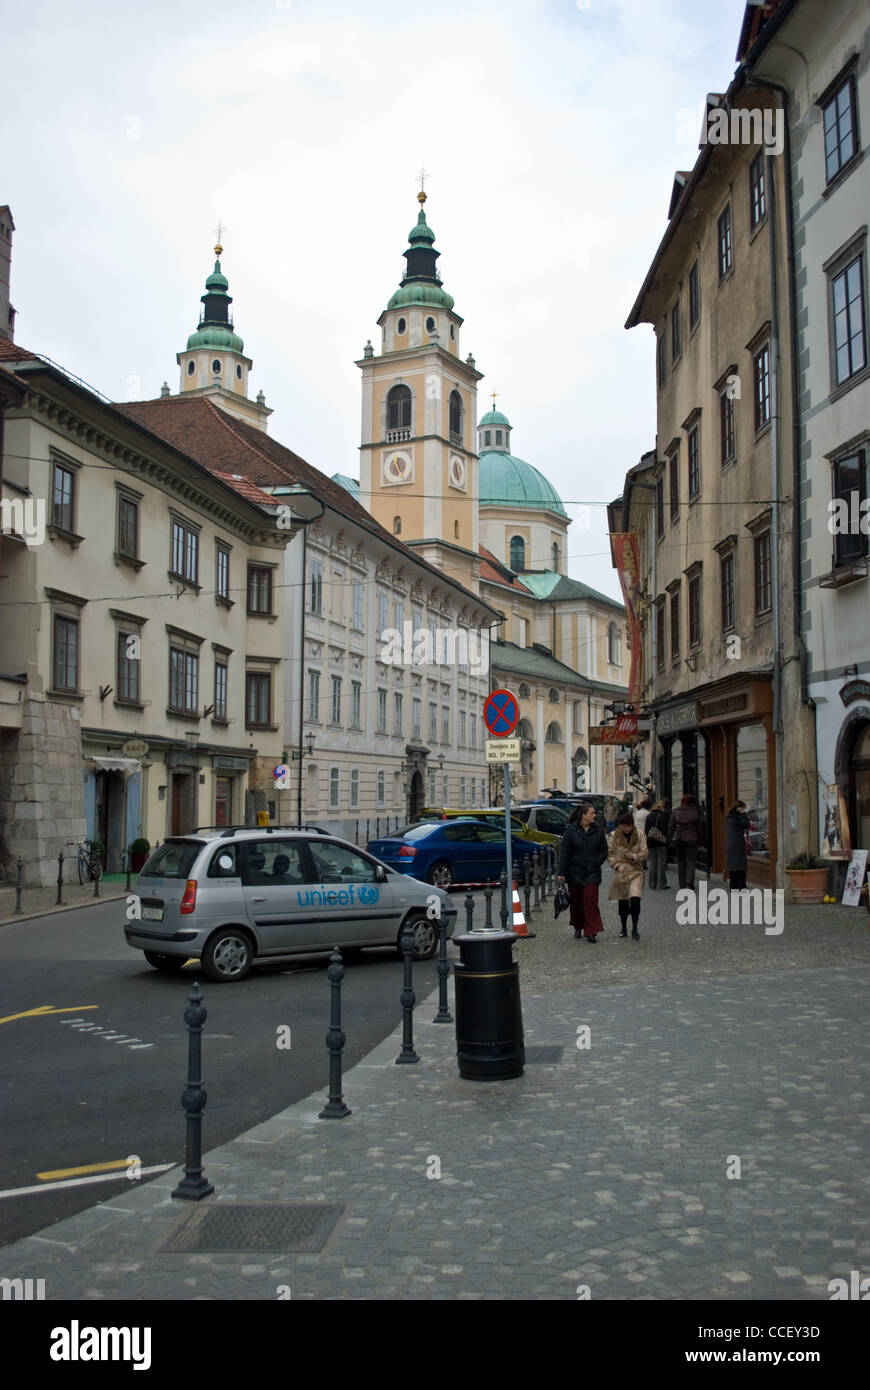 Une rue proche du centre-ville de Ljubljana, Slovénie avec Cathédrale de St Nicholas dans l'arrière-plan. Banque D'Images